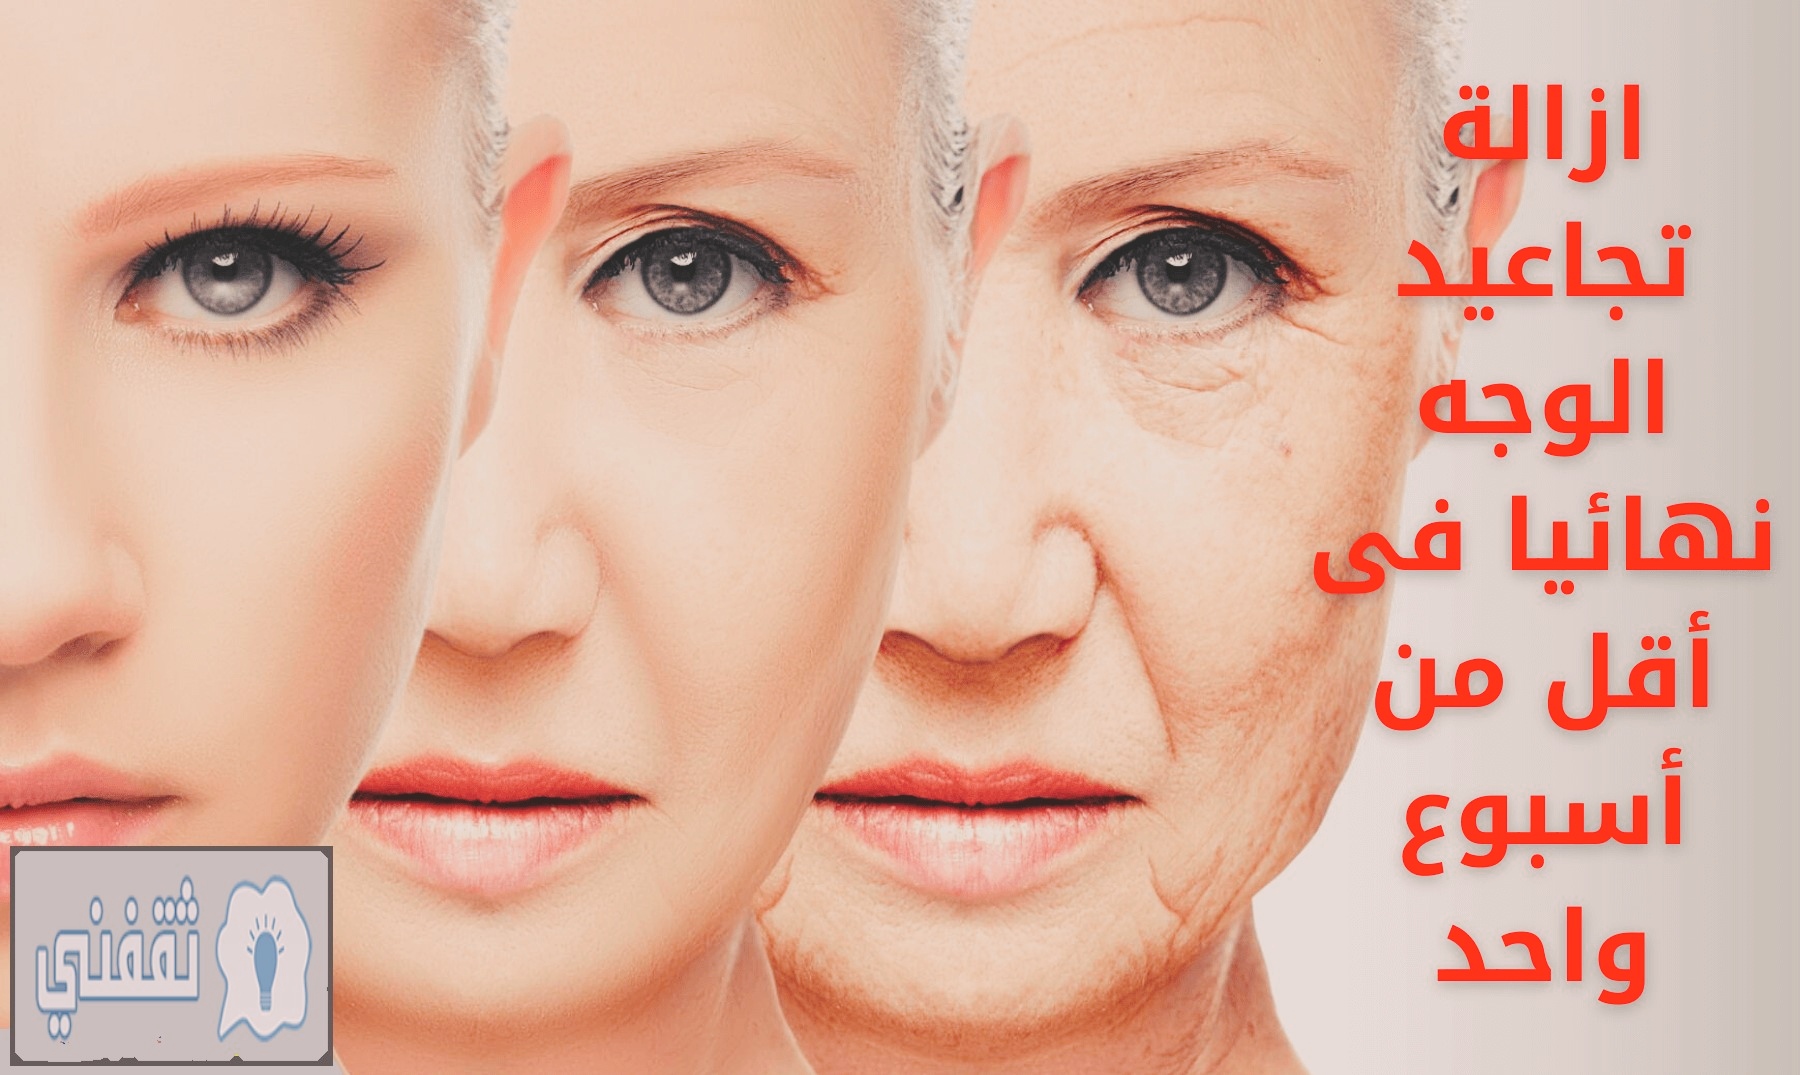 علاج تجاعيد الوجه بدون أدوية وإزالة الكلف والبثور نهائياً